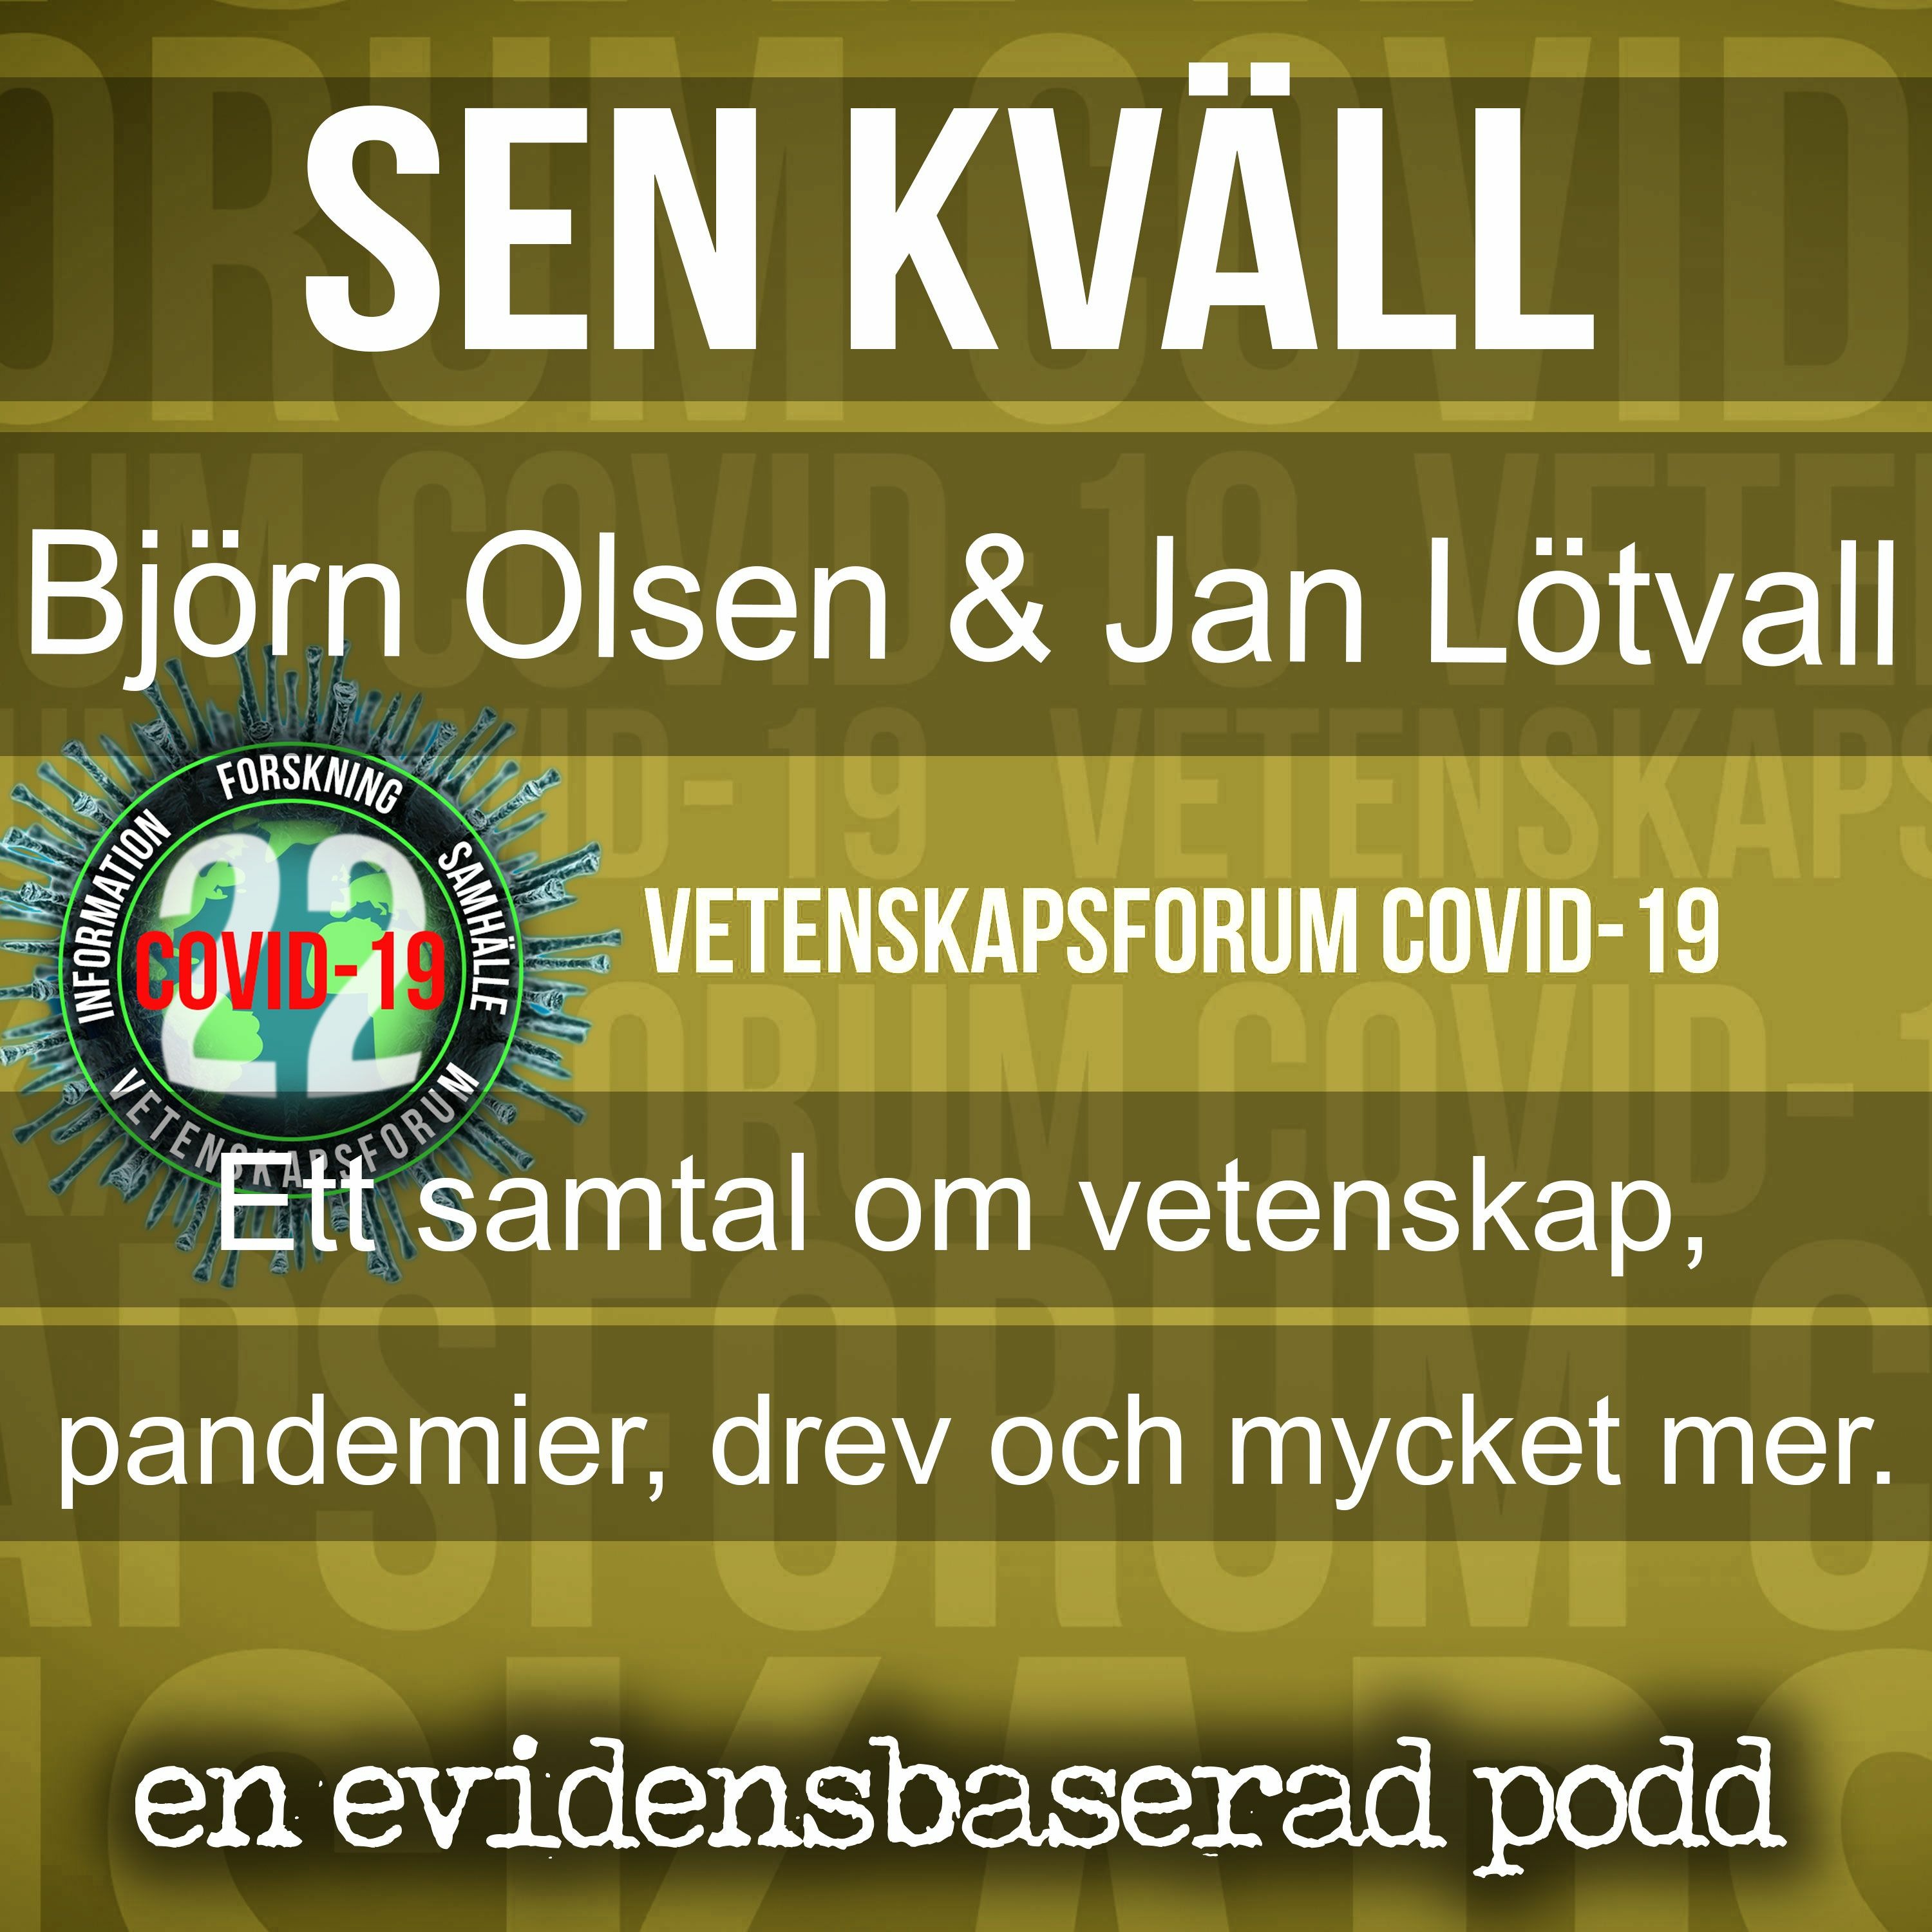 Sen kväll med Björn Olsen och Jan Lötvall